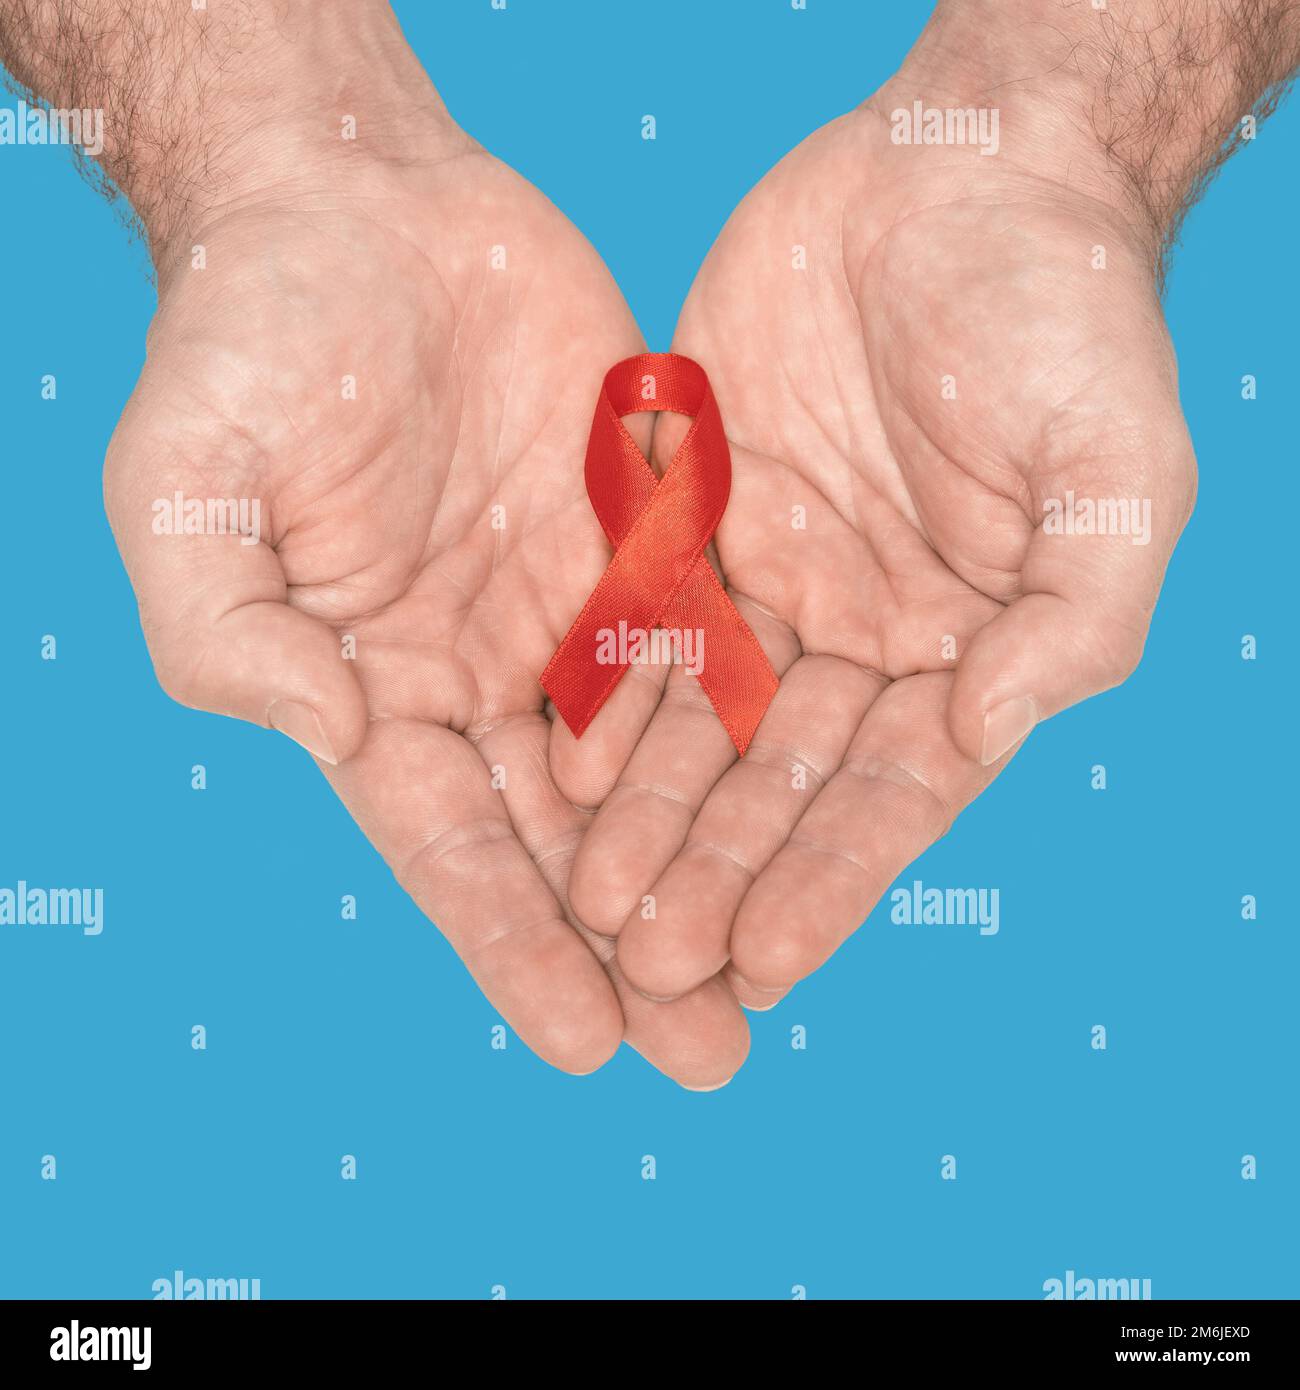 Red awareness nastro inchino su mans aiutare le mani isolate su sfondo blu. HIV, giornata mondiale dell'AIDS. Concetto di vita sociale. Aiuti Foto Stock